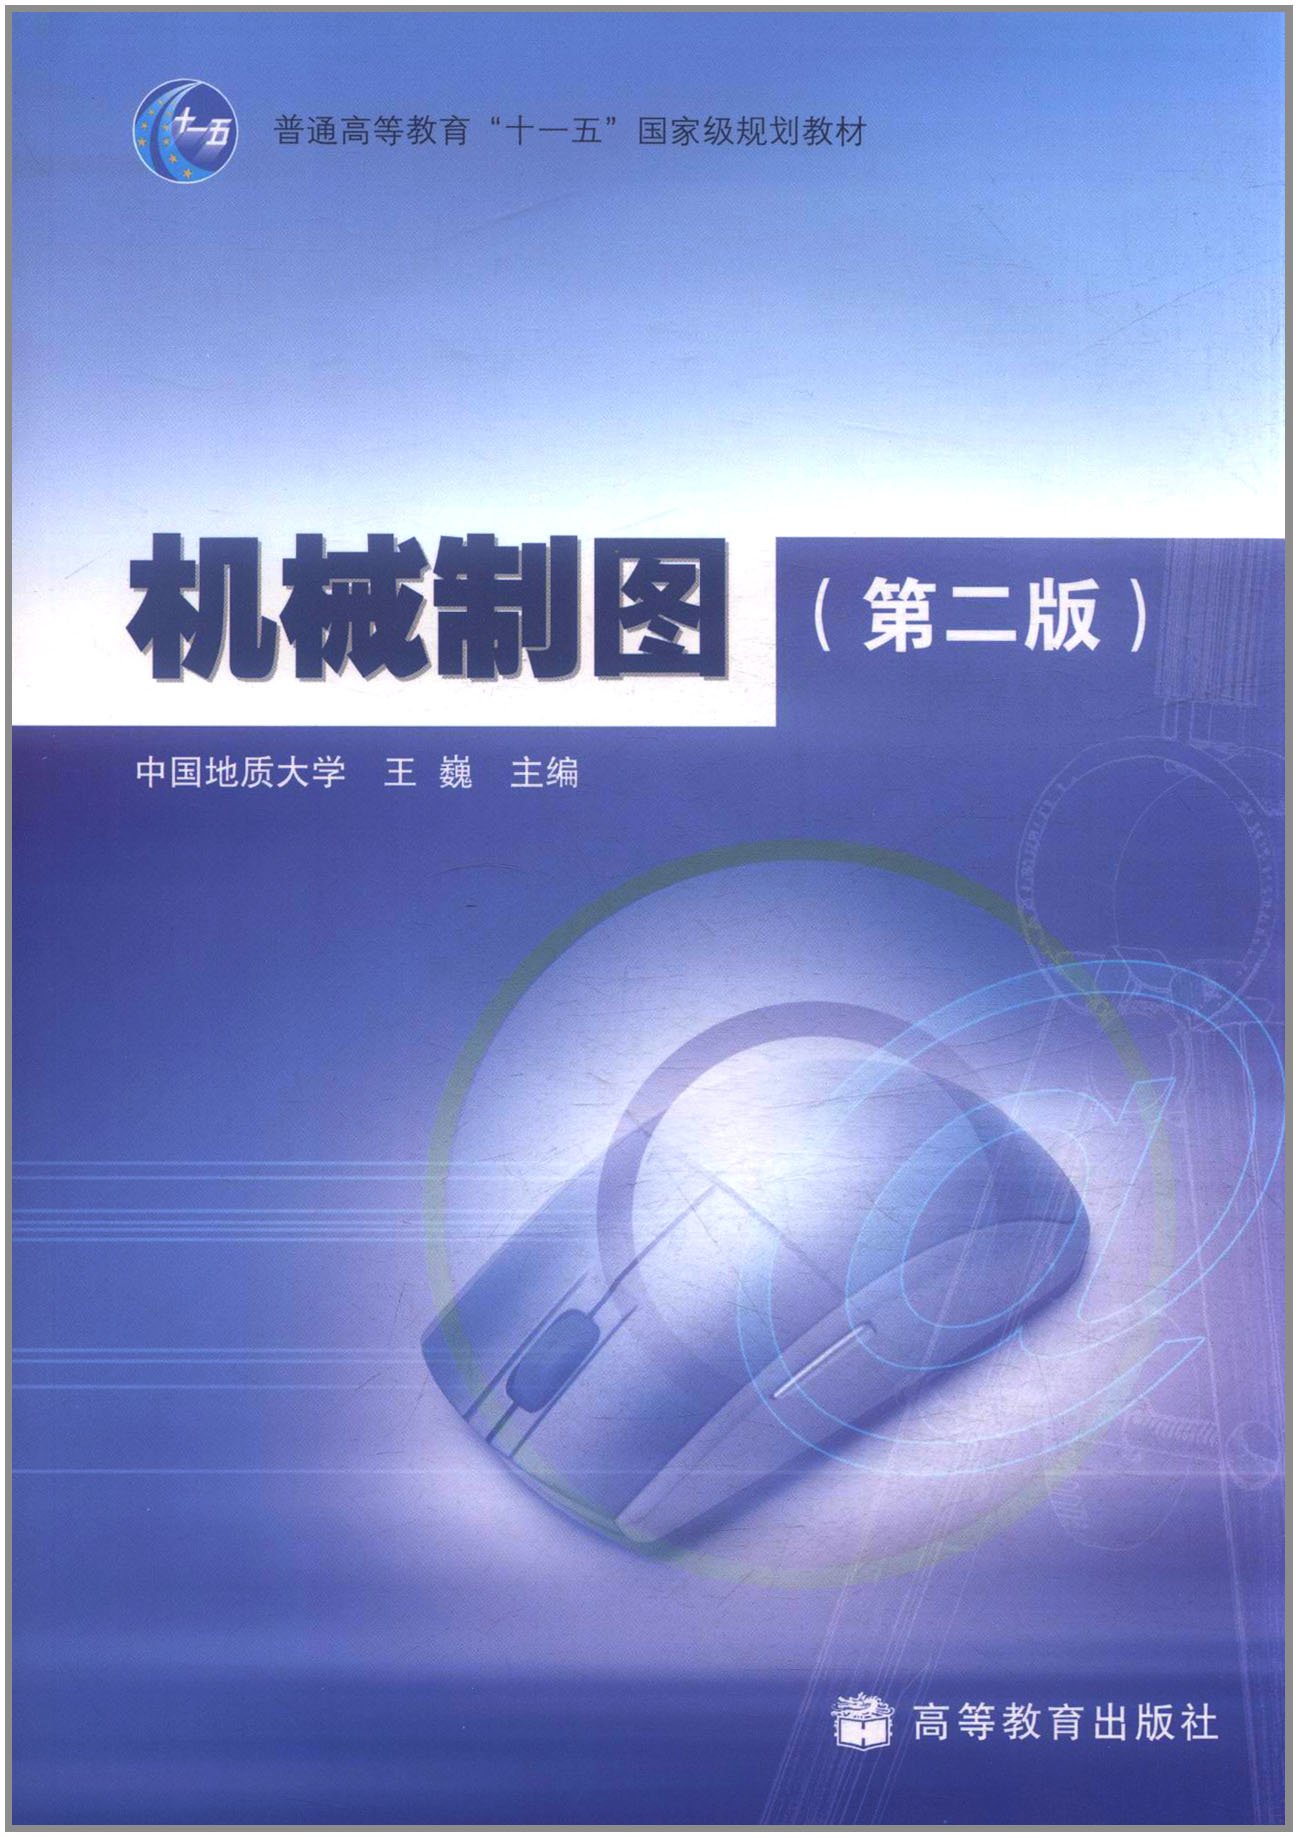 機械製圖（第二版）(2009年6月30日高等教育出版社出版的圖書)